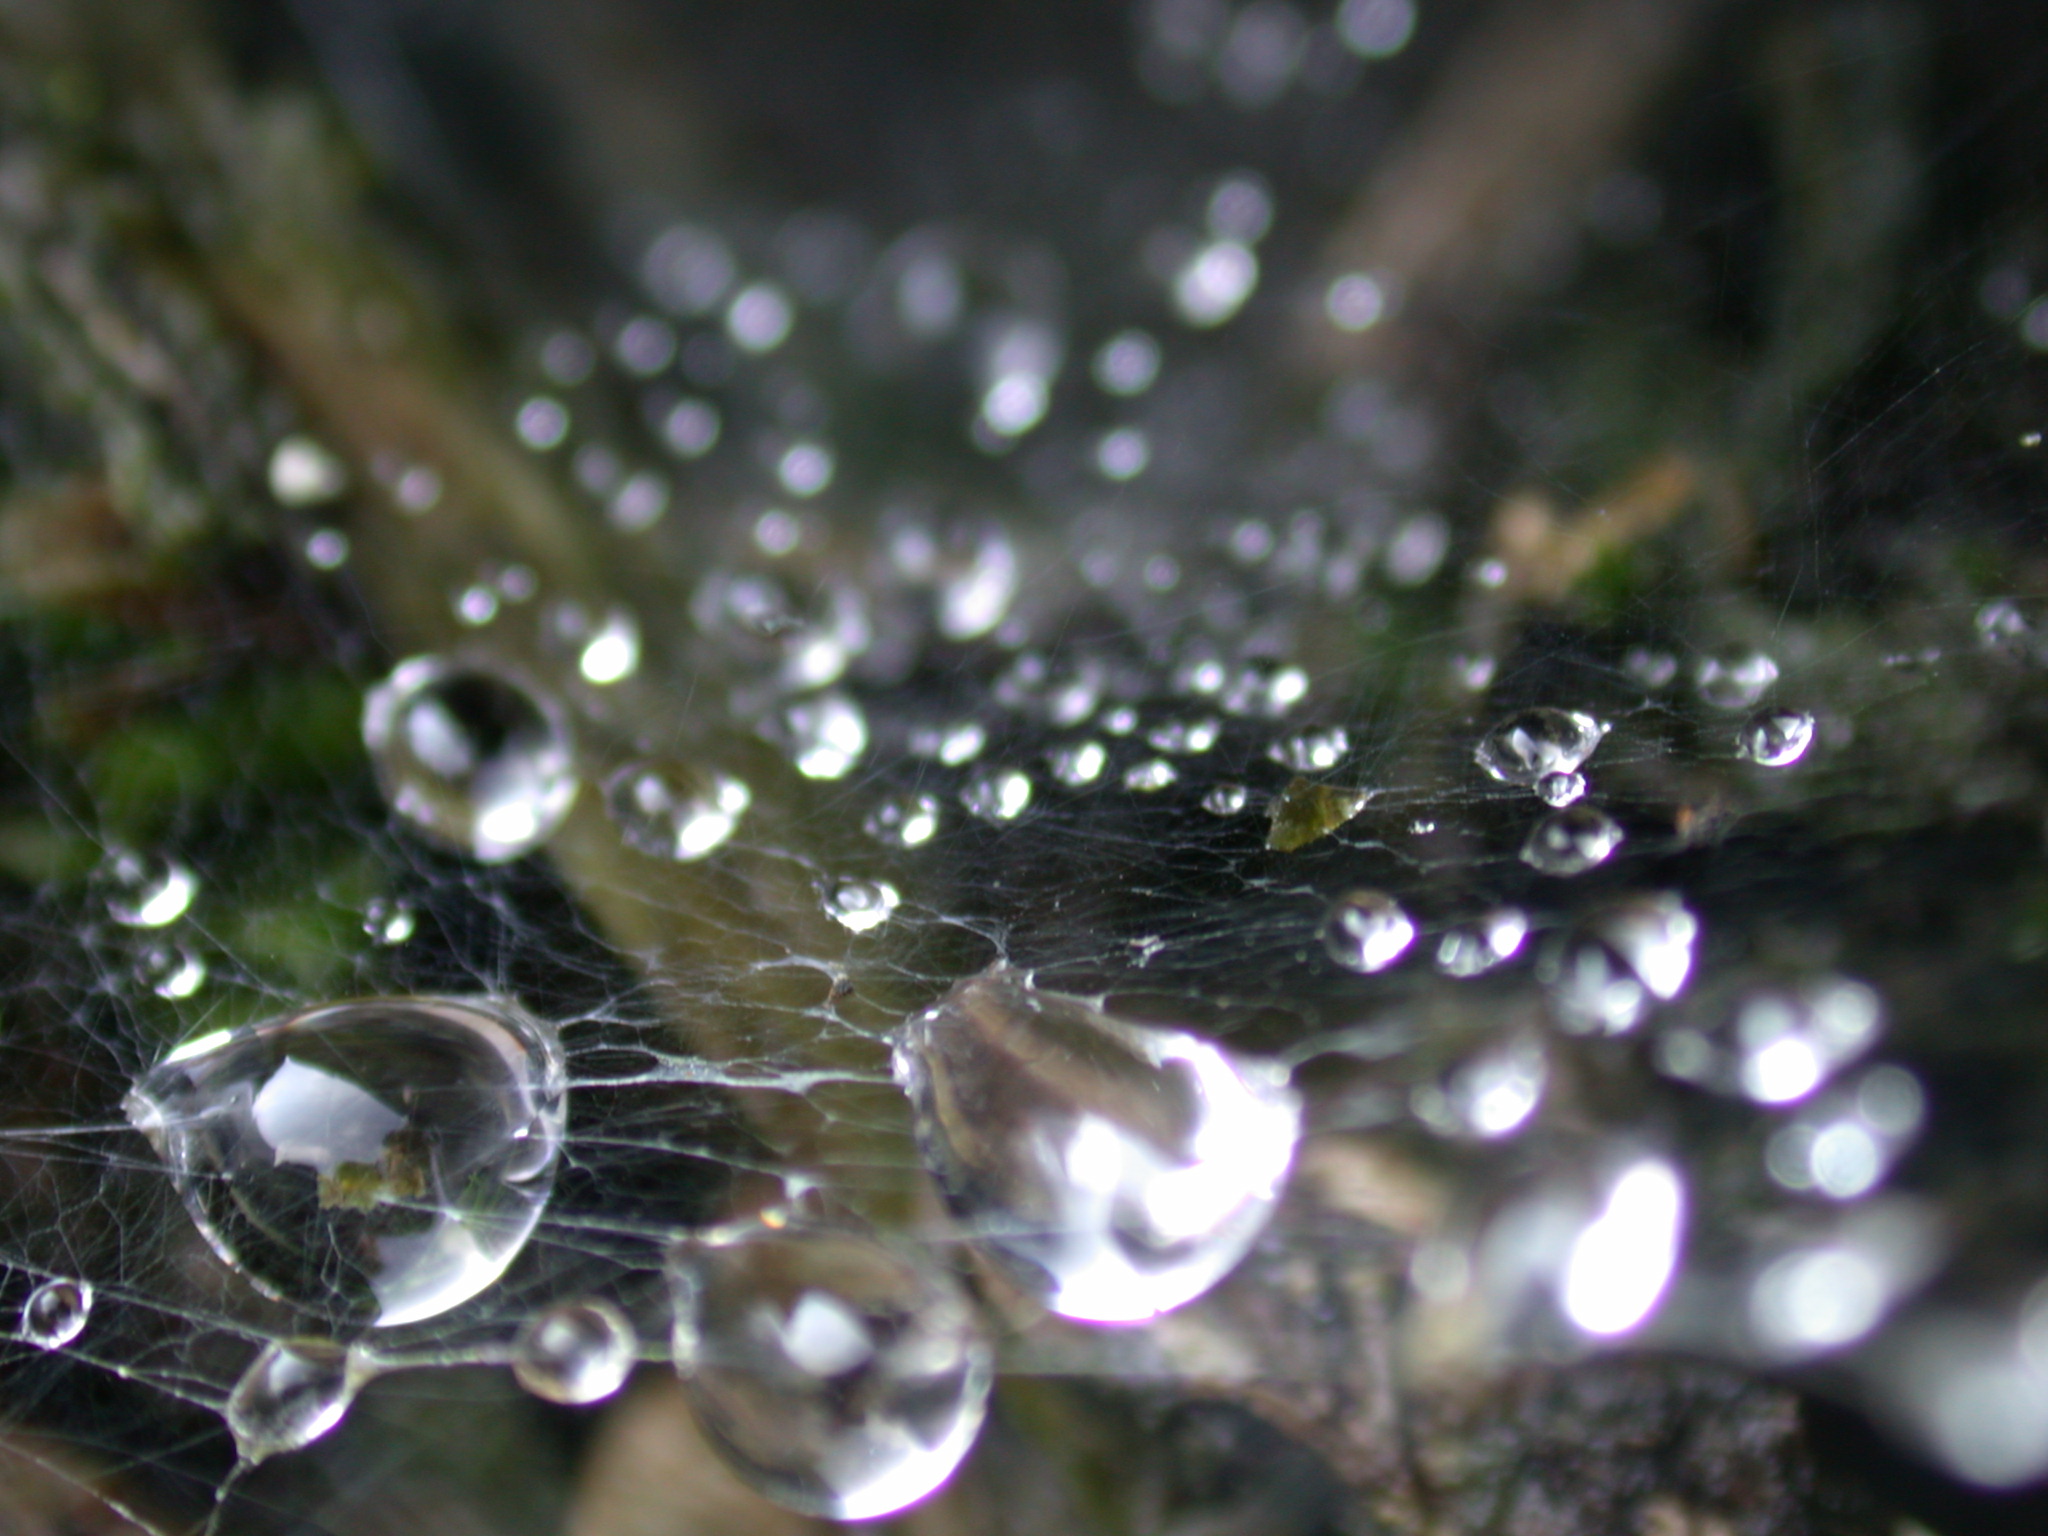 dew drop drops dewdrops dewdrop web cobweb autumn